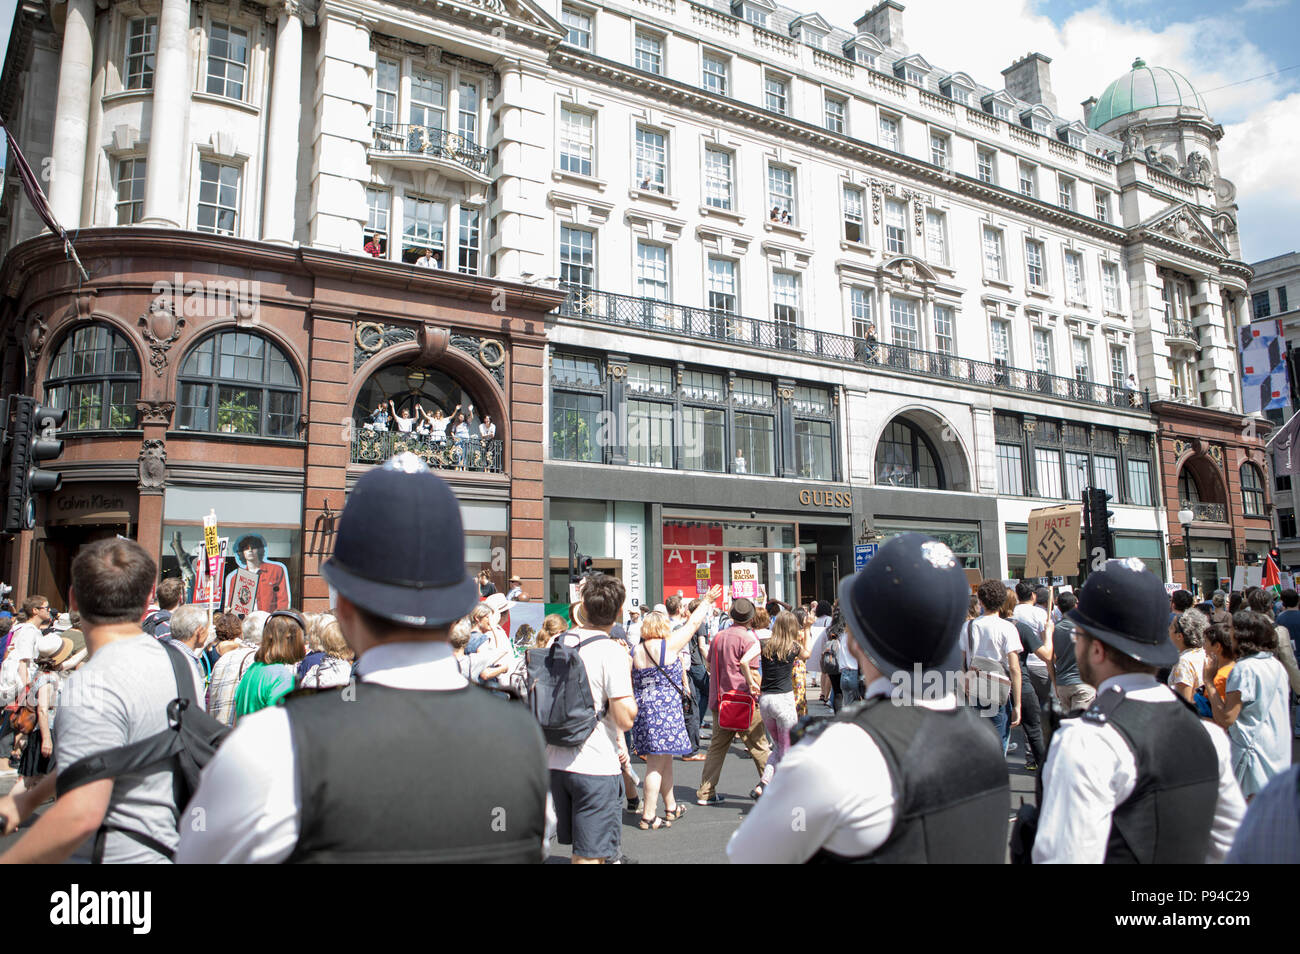 Los manifestantes en el carnaval de la resistencia, el anti-Trump protesta organizada en Londres, Reino Unido el 13 de julio de 2018. Foto de stock